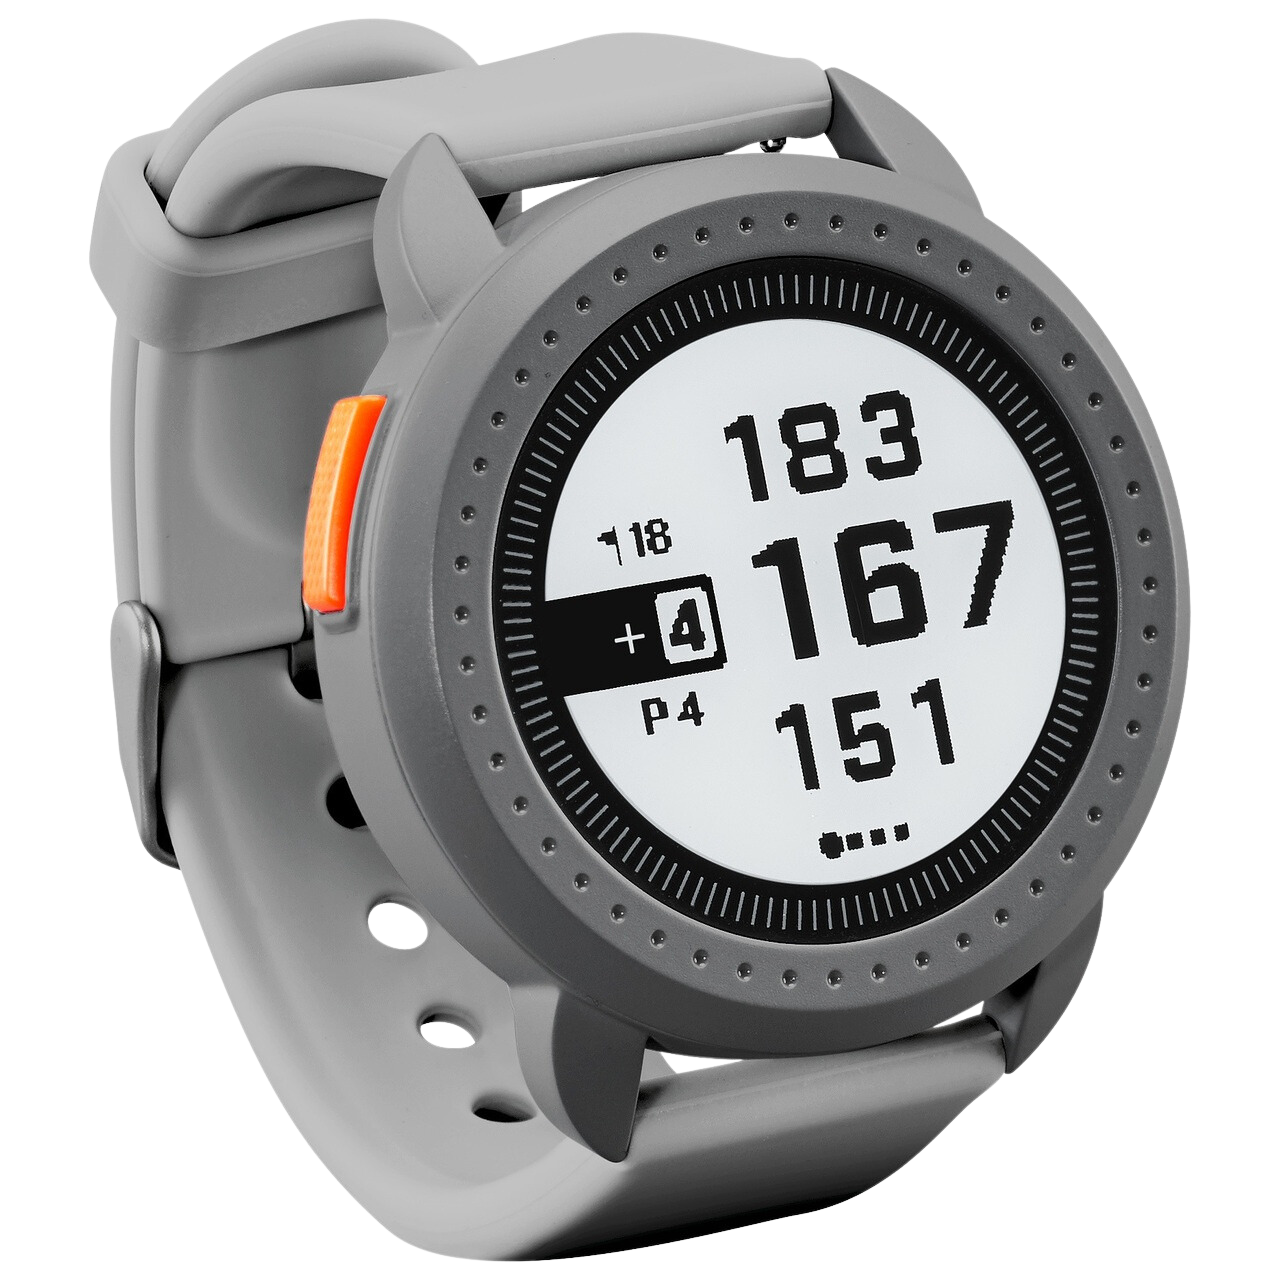 Bushnell Golf Ion Edge GPS Rangefinder Watch